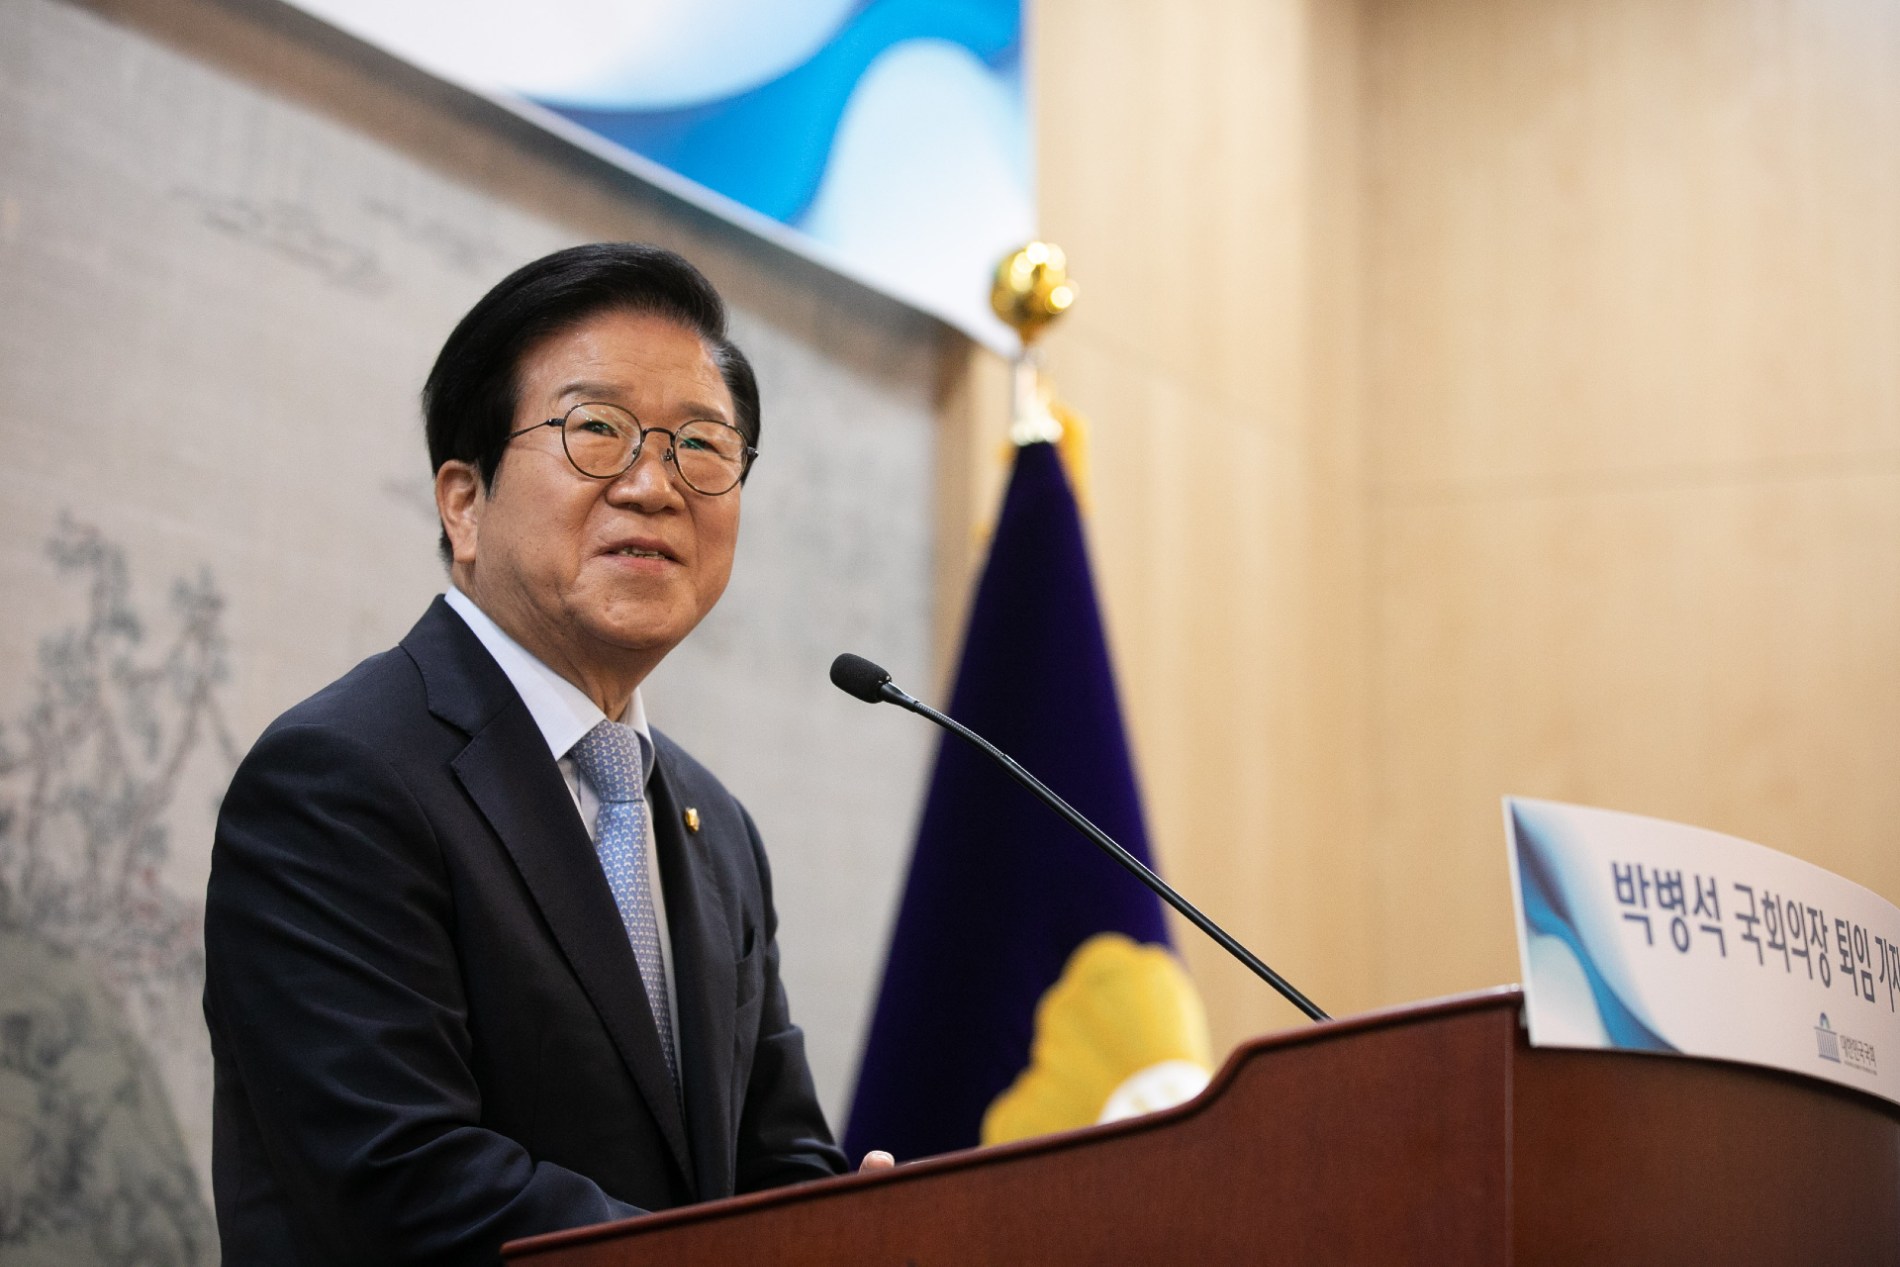 박병석 국회의장 퇴임 기자간담회, "개헌으로 권력분산시켜 협치해야"